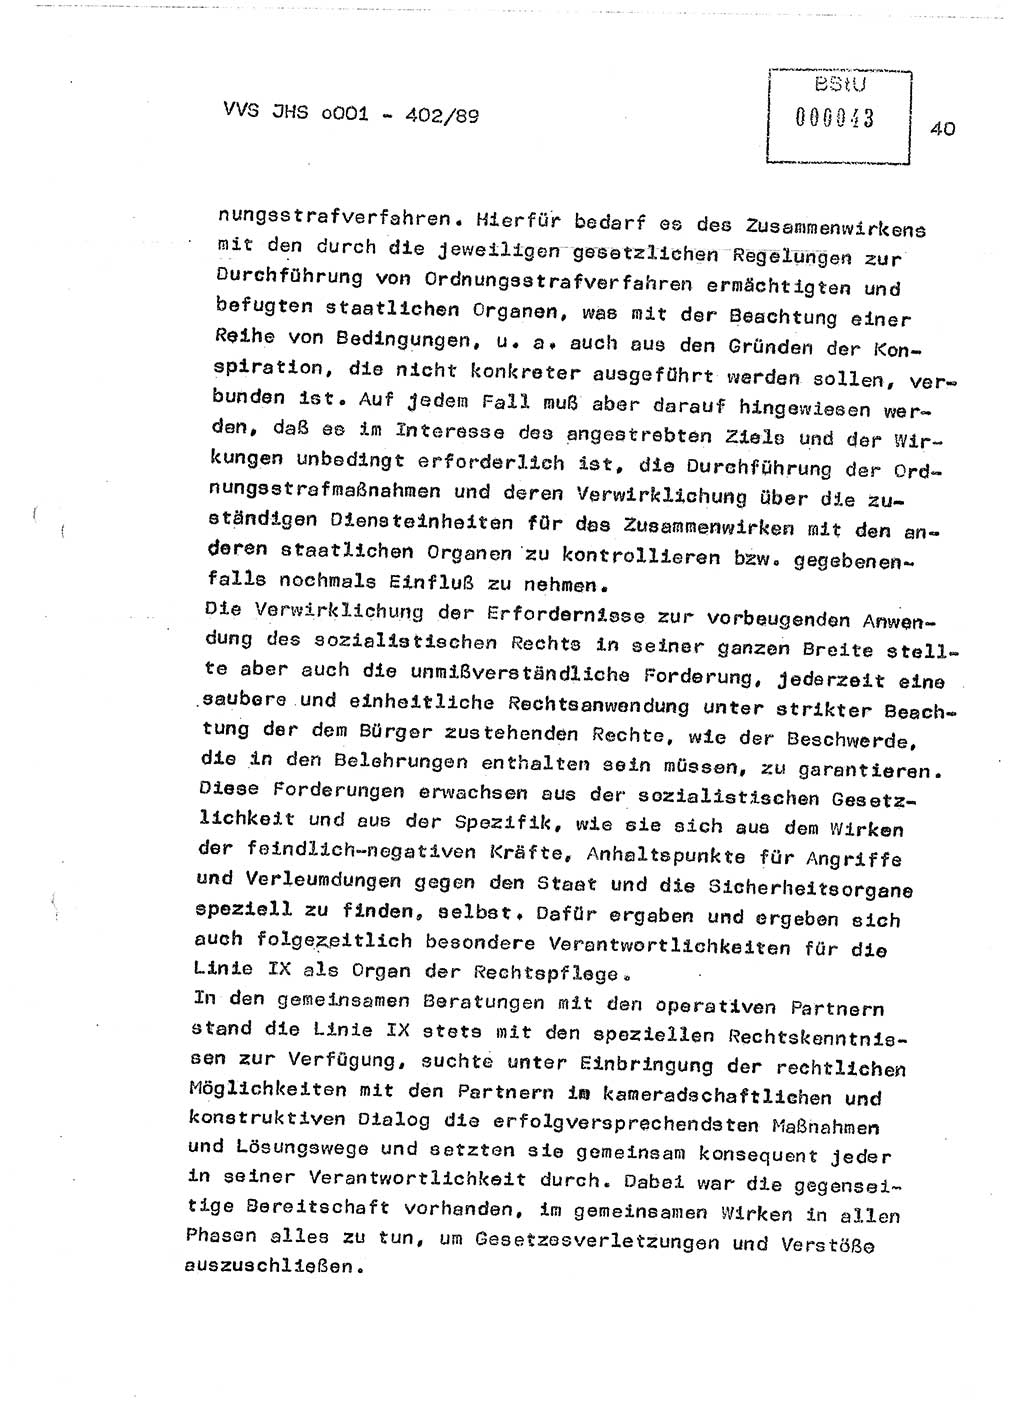 Diplomarbeit Major Günter Müller (HA Ⅸ/9), Ministerium für Staatssicherheit (MfS) [Deutsche Demokratische Republik (DDR)], Juristische Hochschule (JHS), Vertrauliche Verschlußsache (VVS) o001-402/89, Potsdam 1989, Seite 40 (Dipl.-Arb. MfS DDR JHS VVS o001-402/89 1989, S. 40)